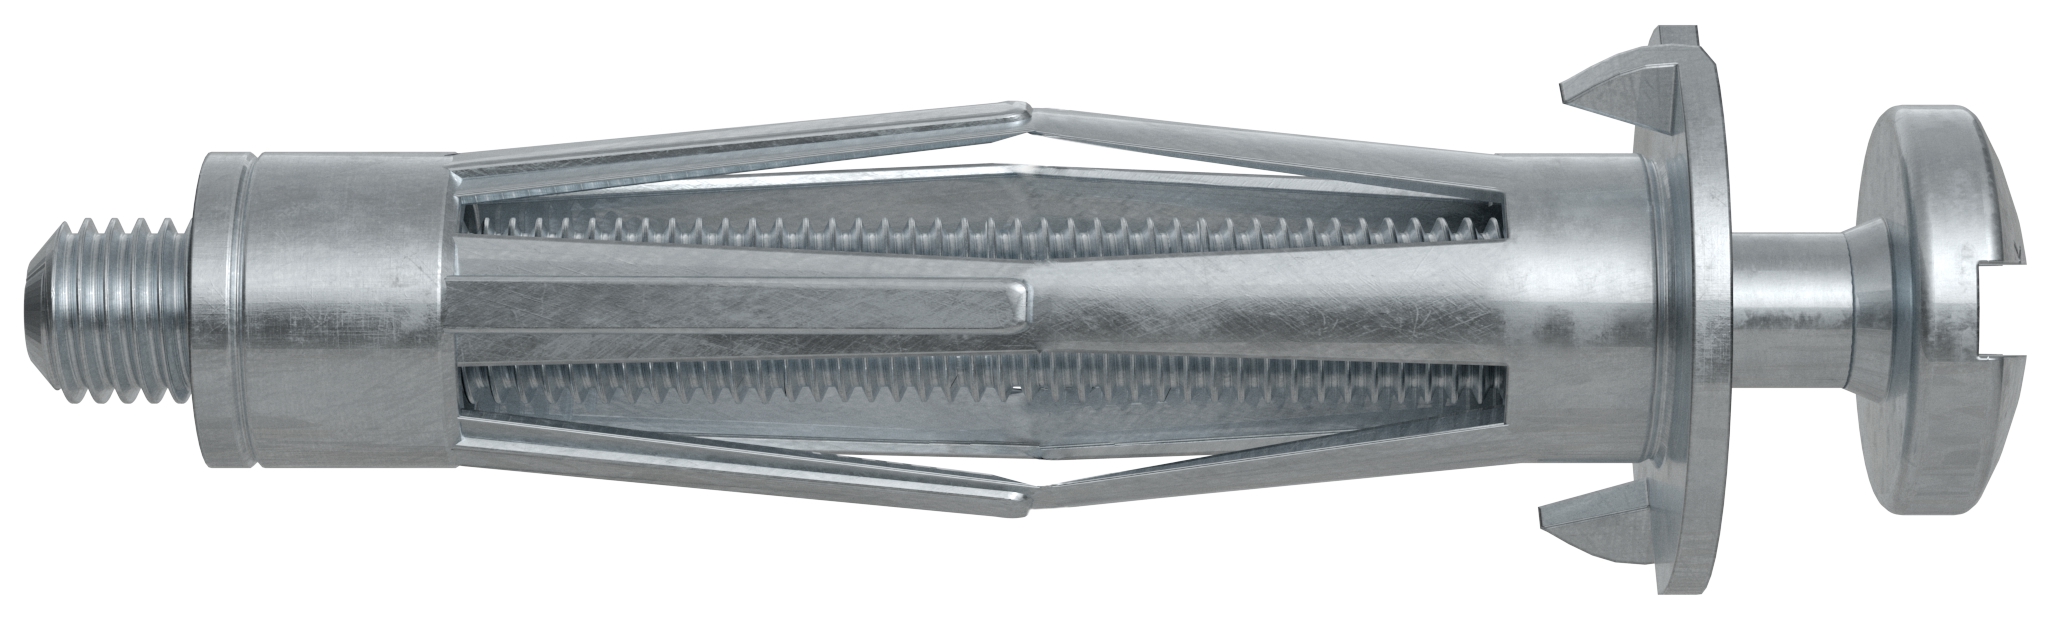 Fischer HM 5 x 37 S B. Der vielseitige Hohlraumdübel aus Metall mit metrischer Schraube.